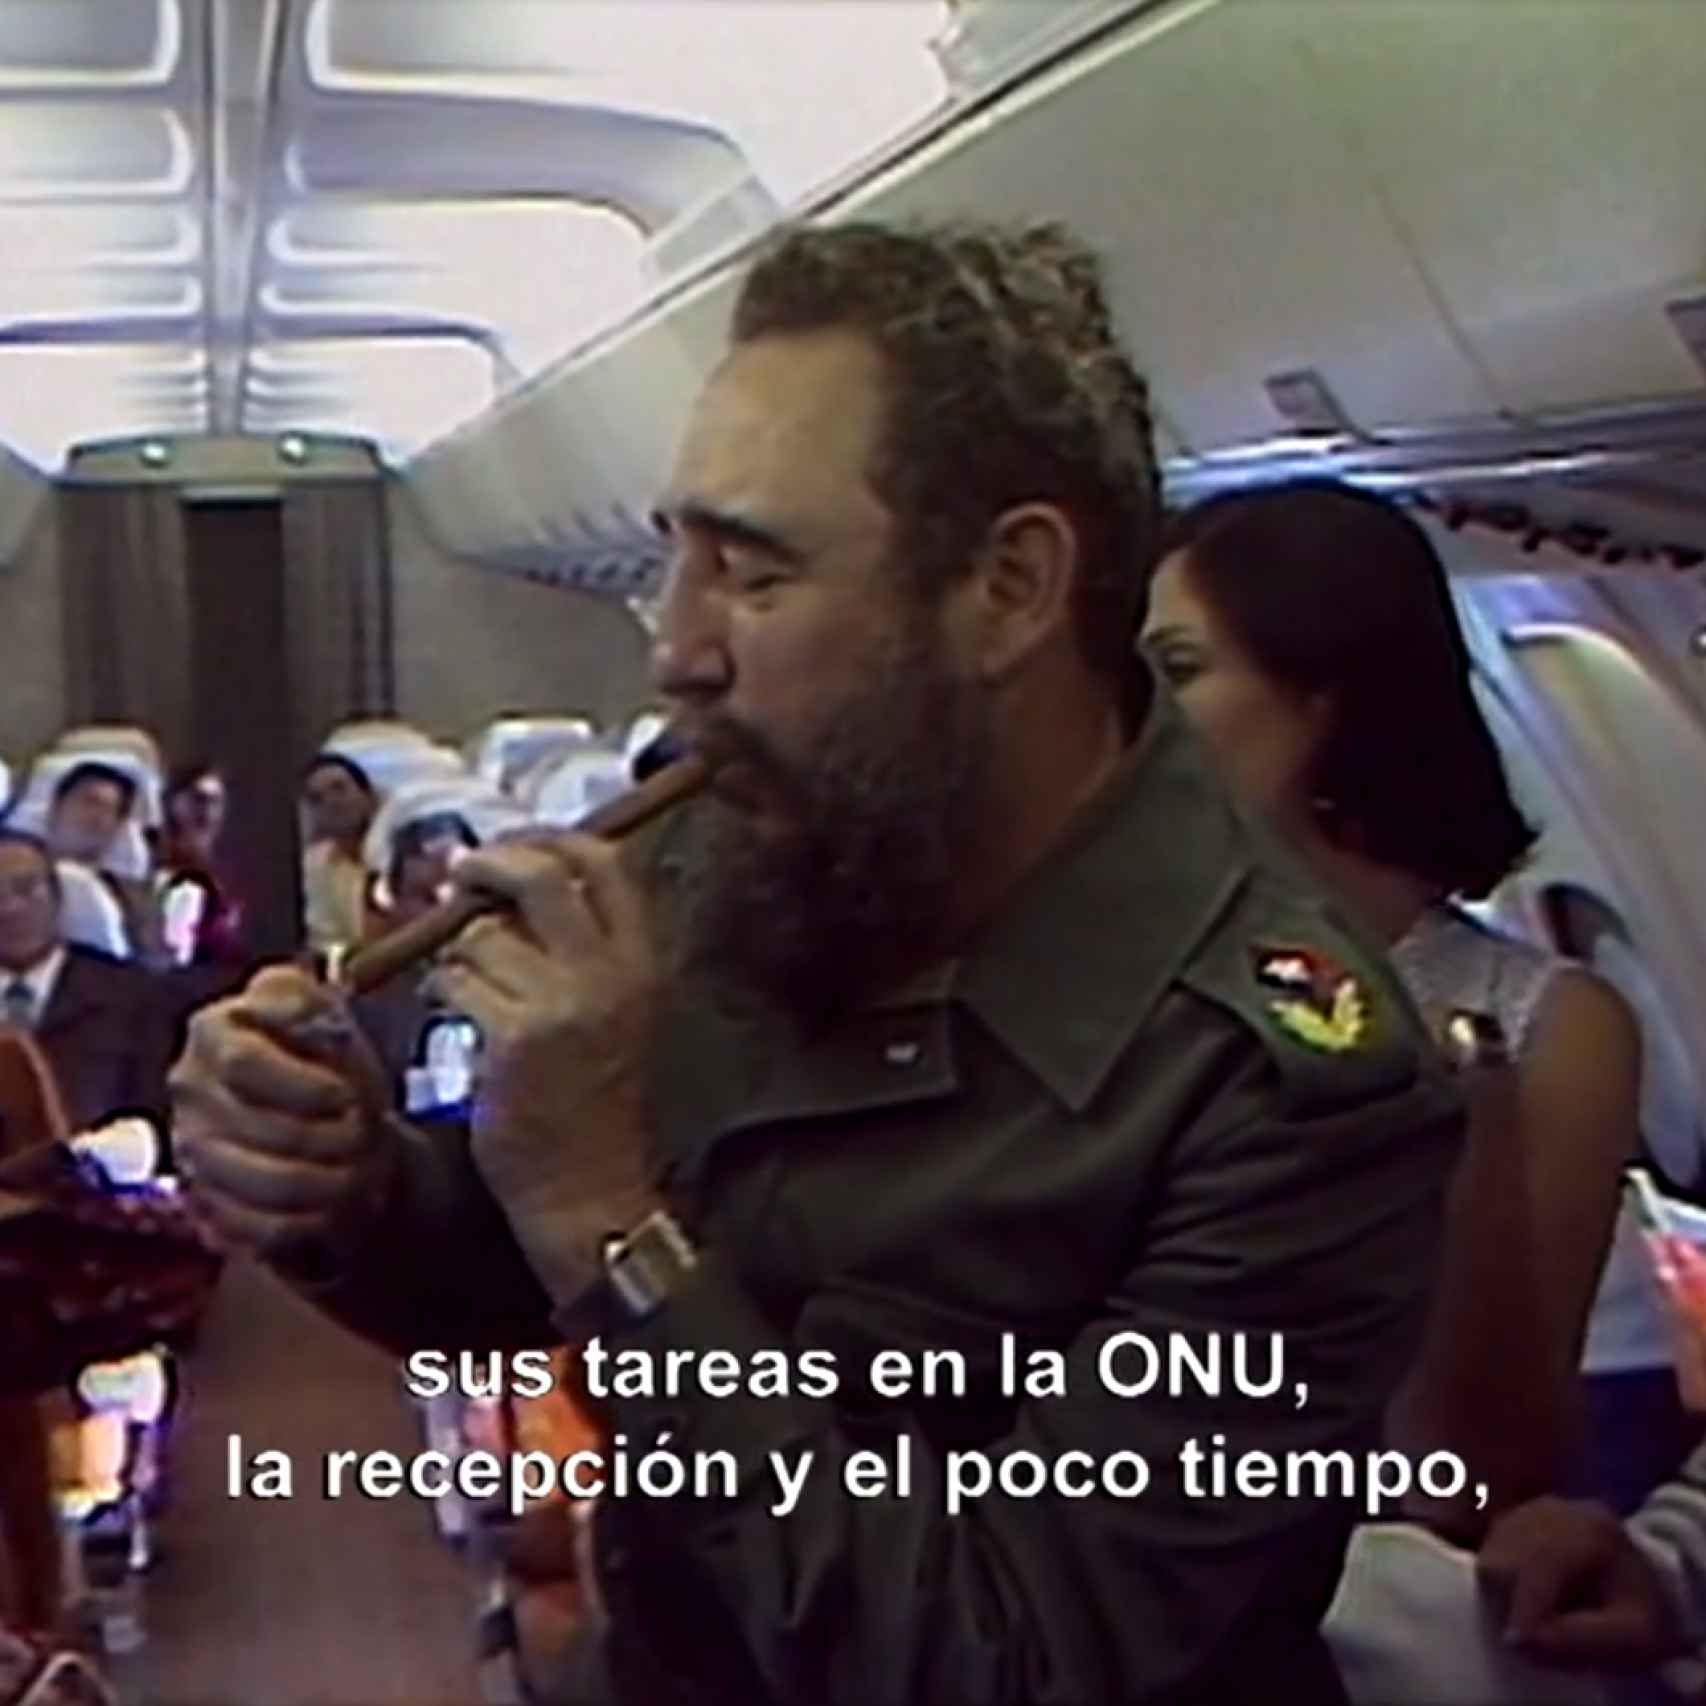 Fidel fumando en su avion